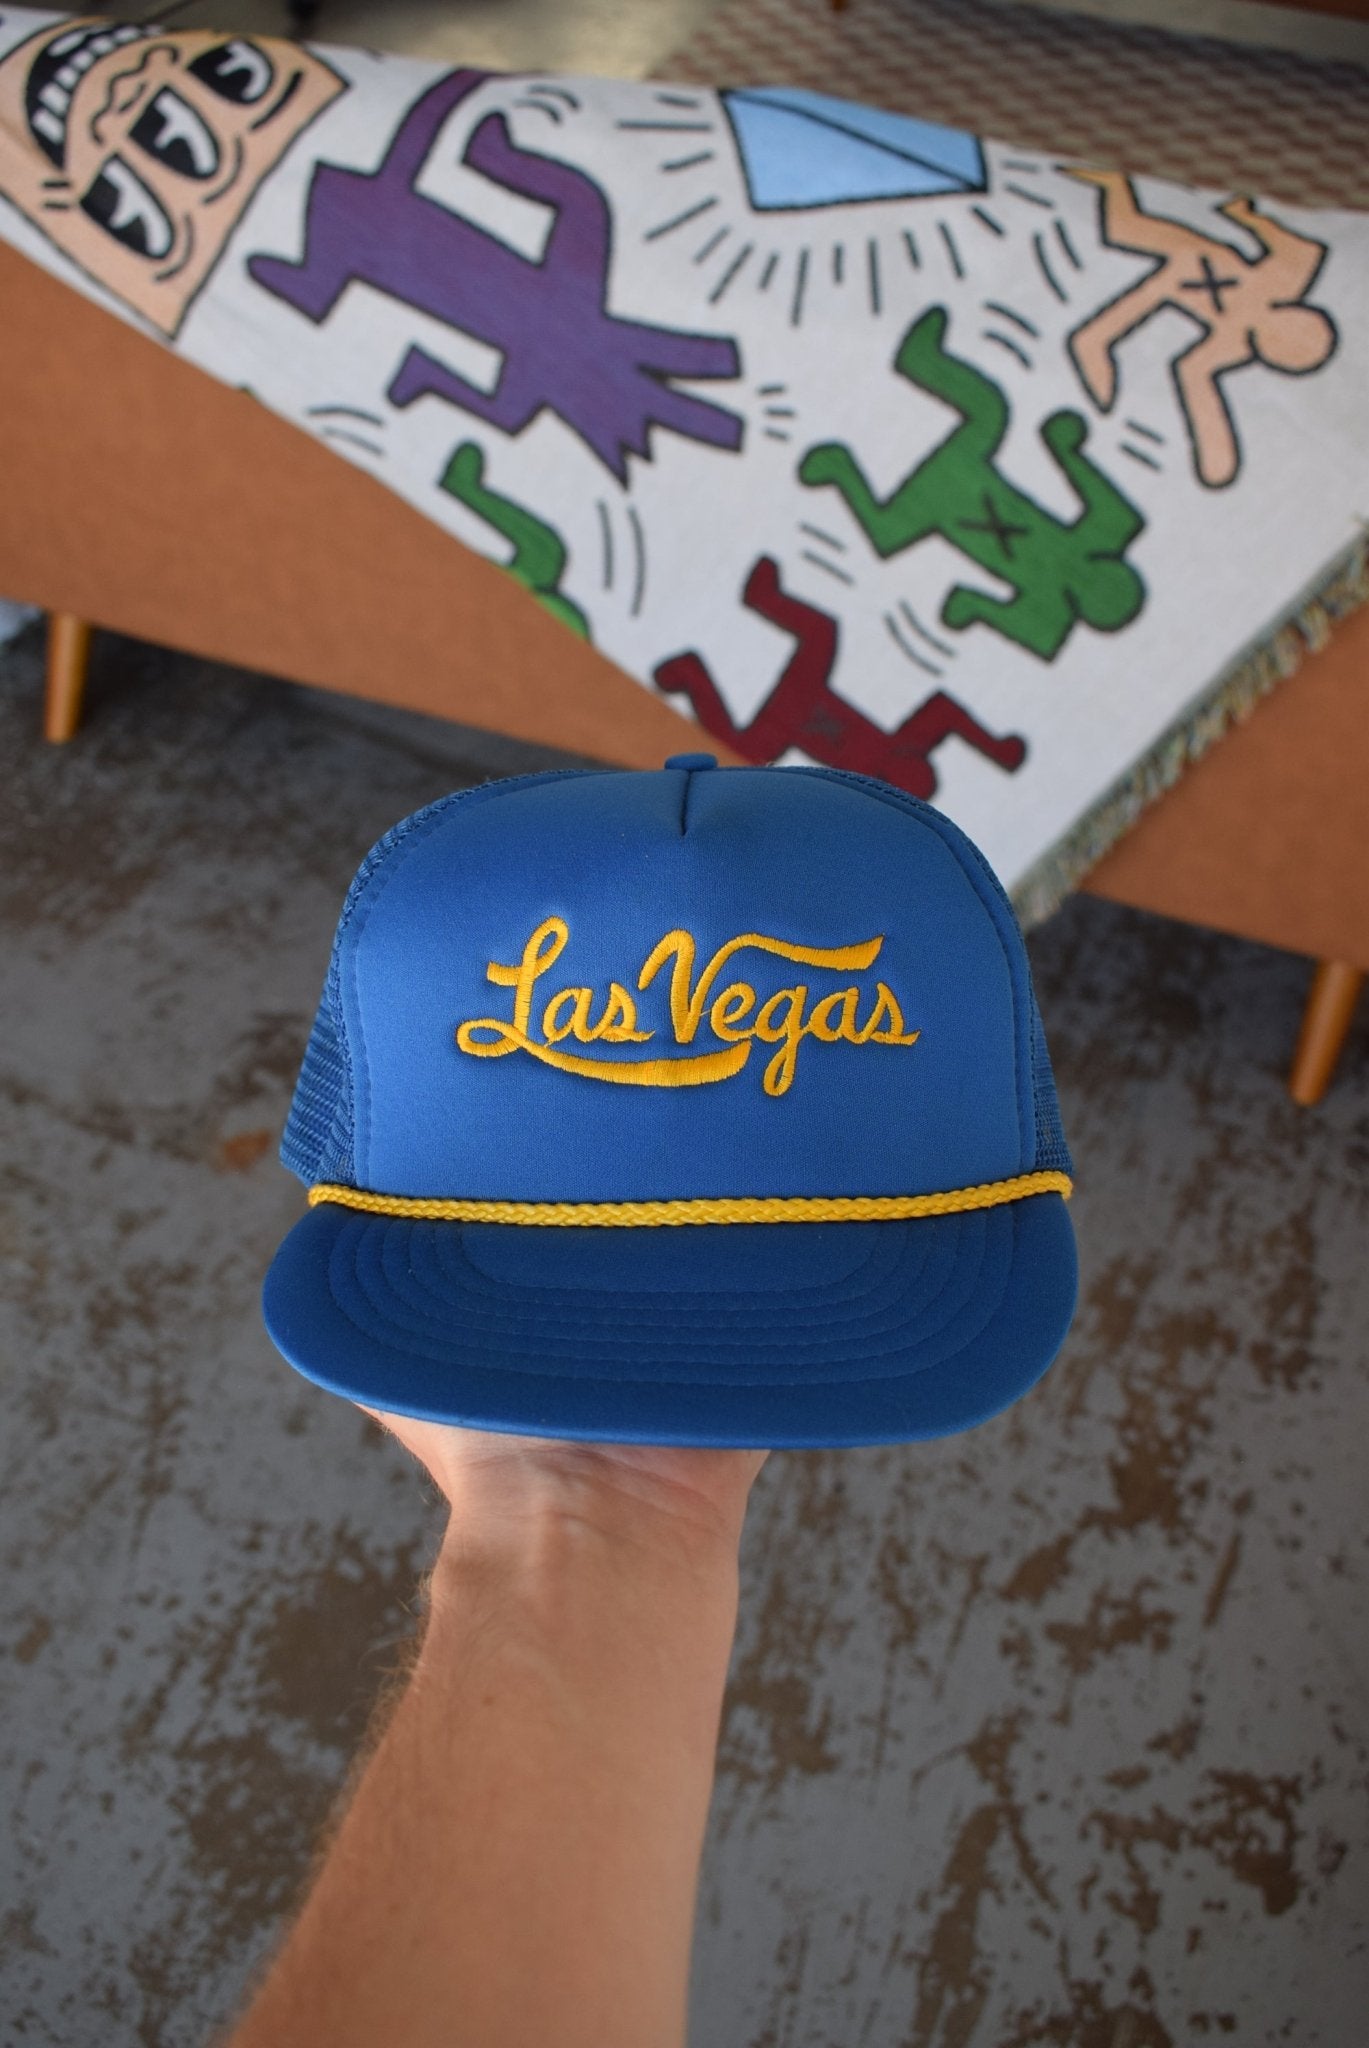 Vintage 90s Las Vegas Trucker Hat - Retrospective Store